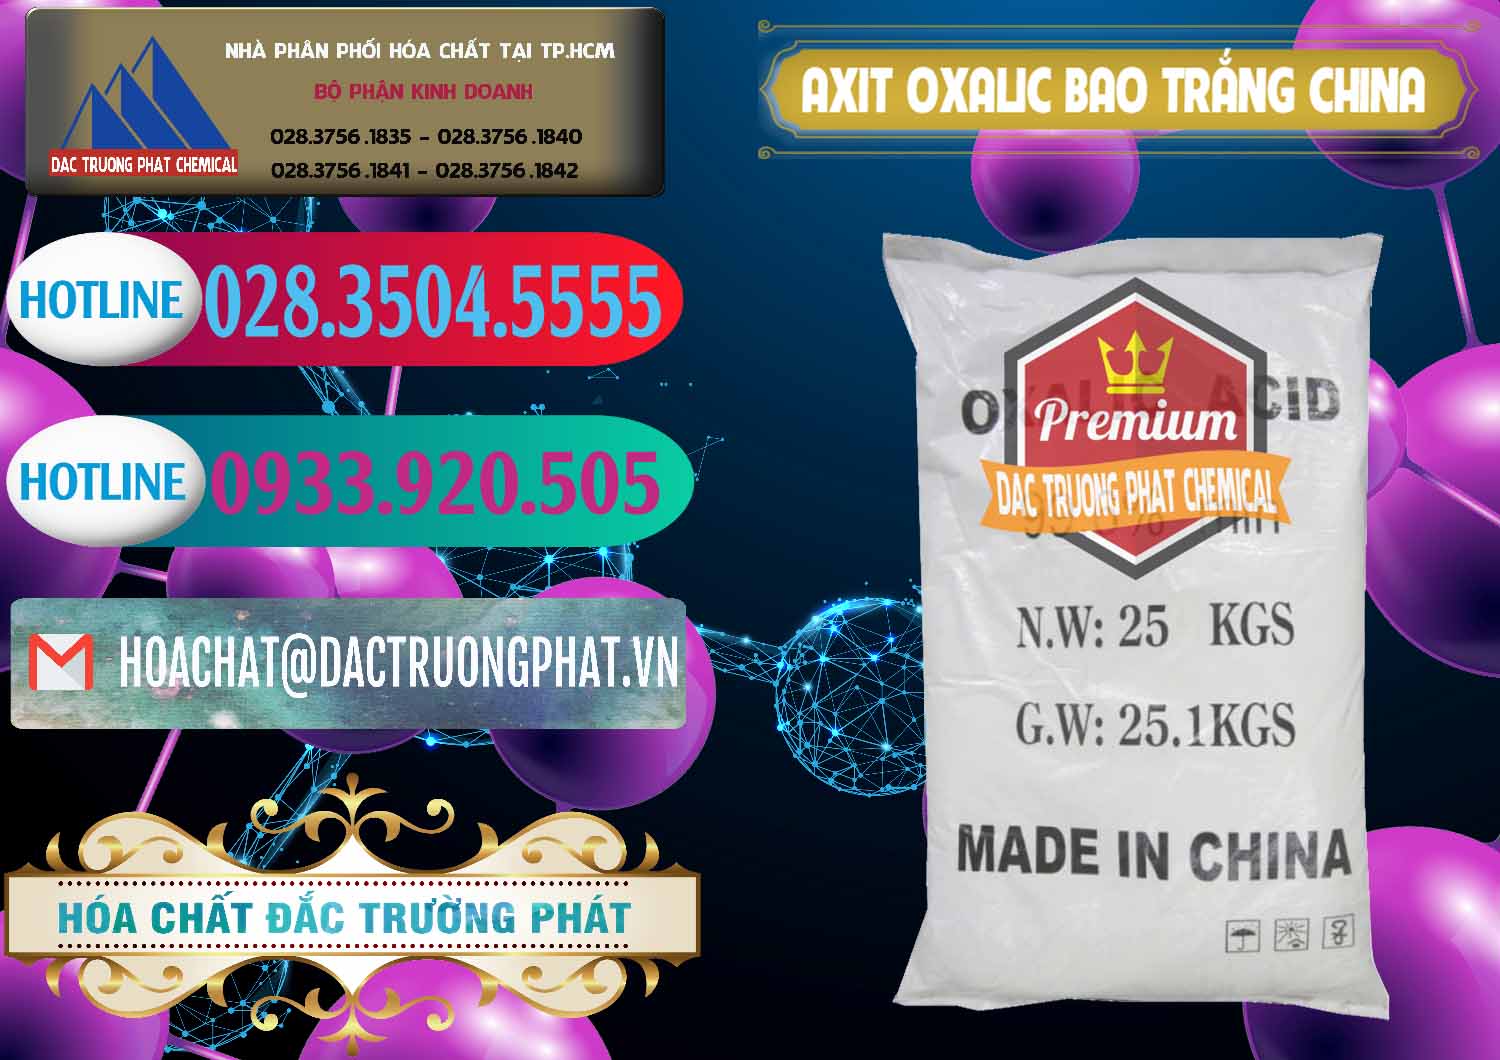 Đơn vị bán ( cung ứng ) Acid Oxalic – Axit Oxalic 99.6% Bao Trắng Trung Quốc China - 0270 - Nhà cung cấp & phân phối hóa chất tại TP.HCM - truongphat.vn